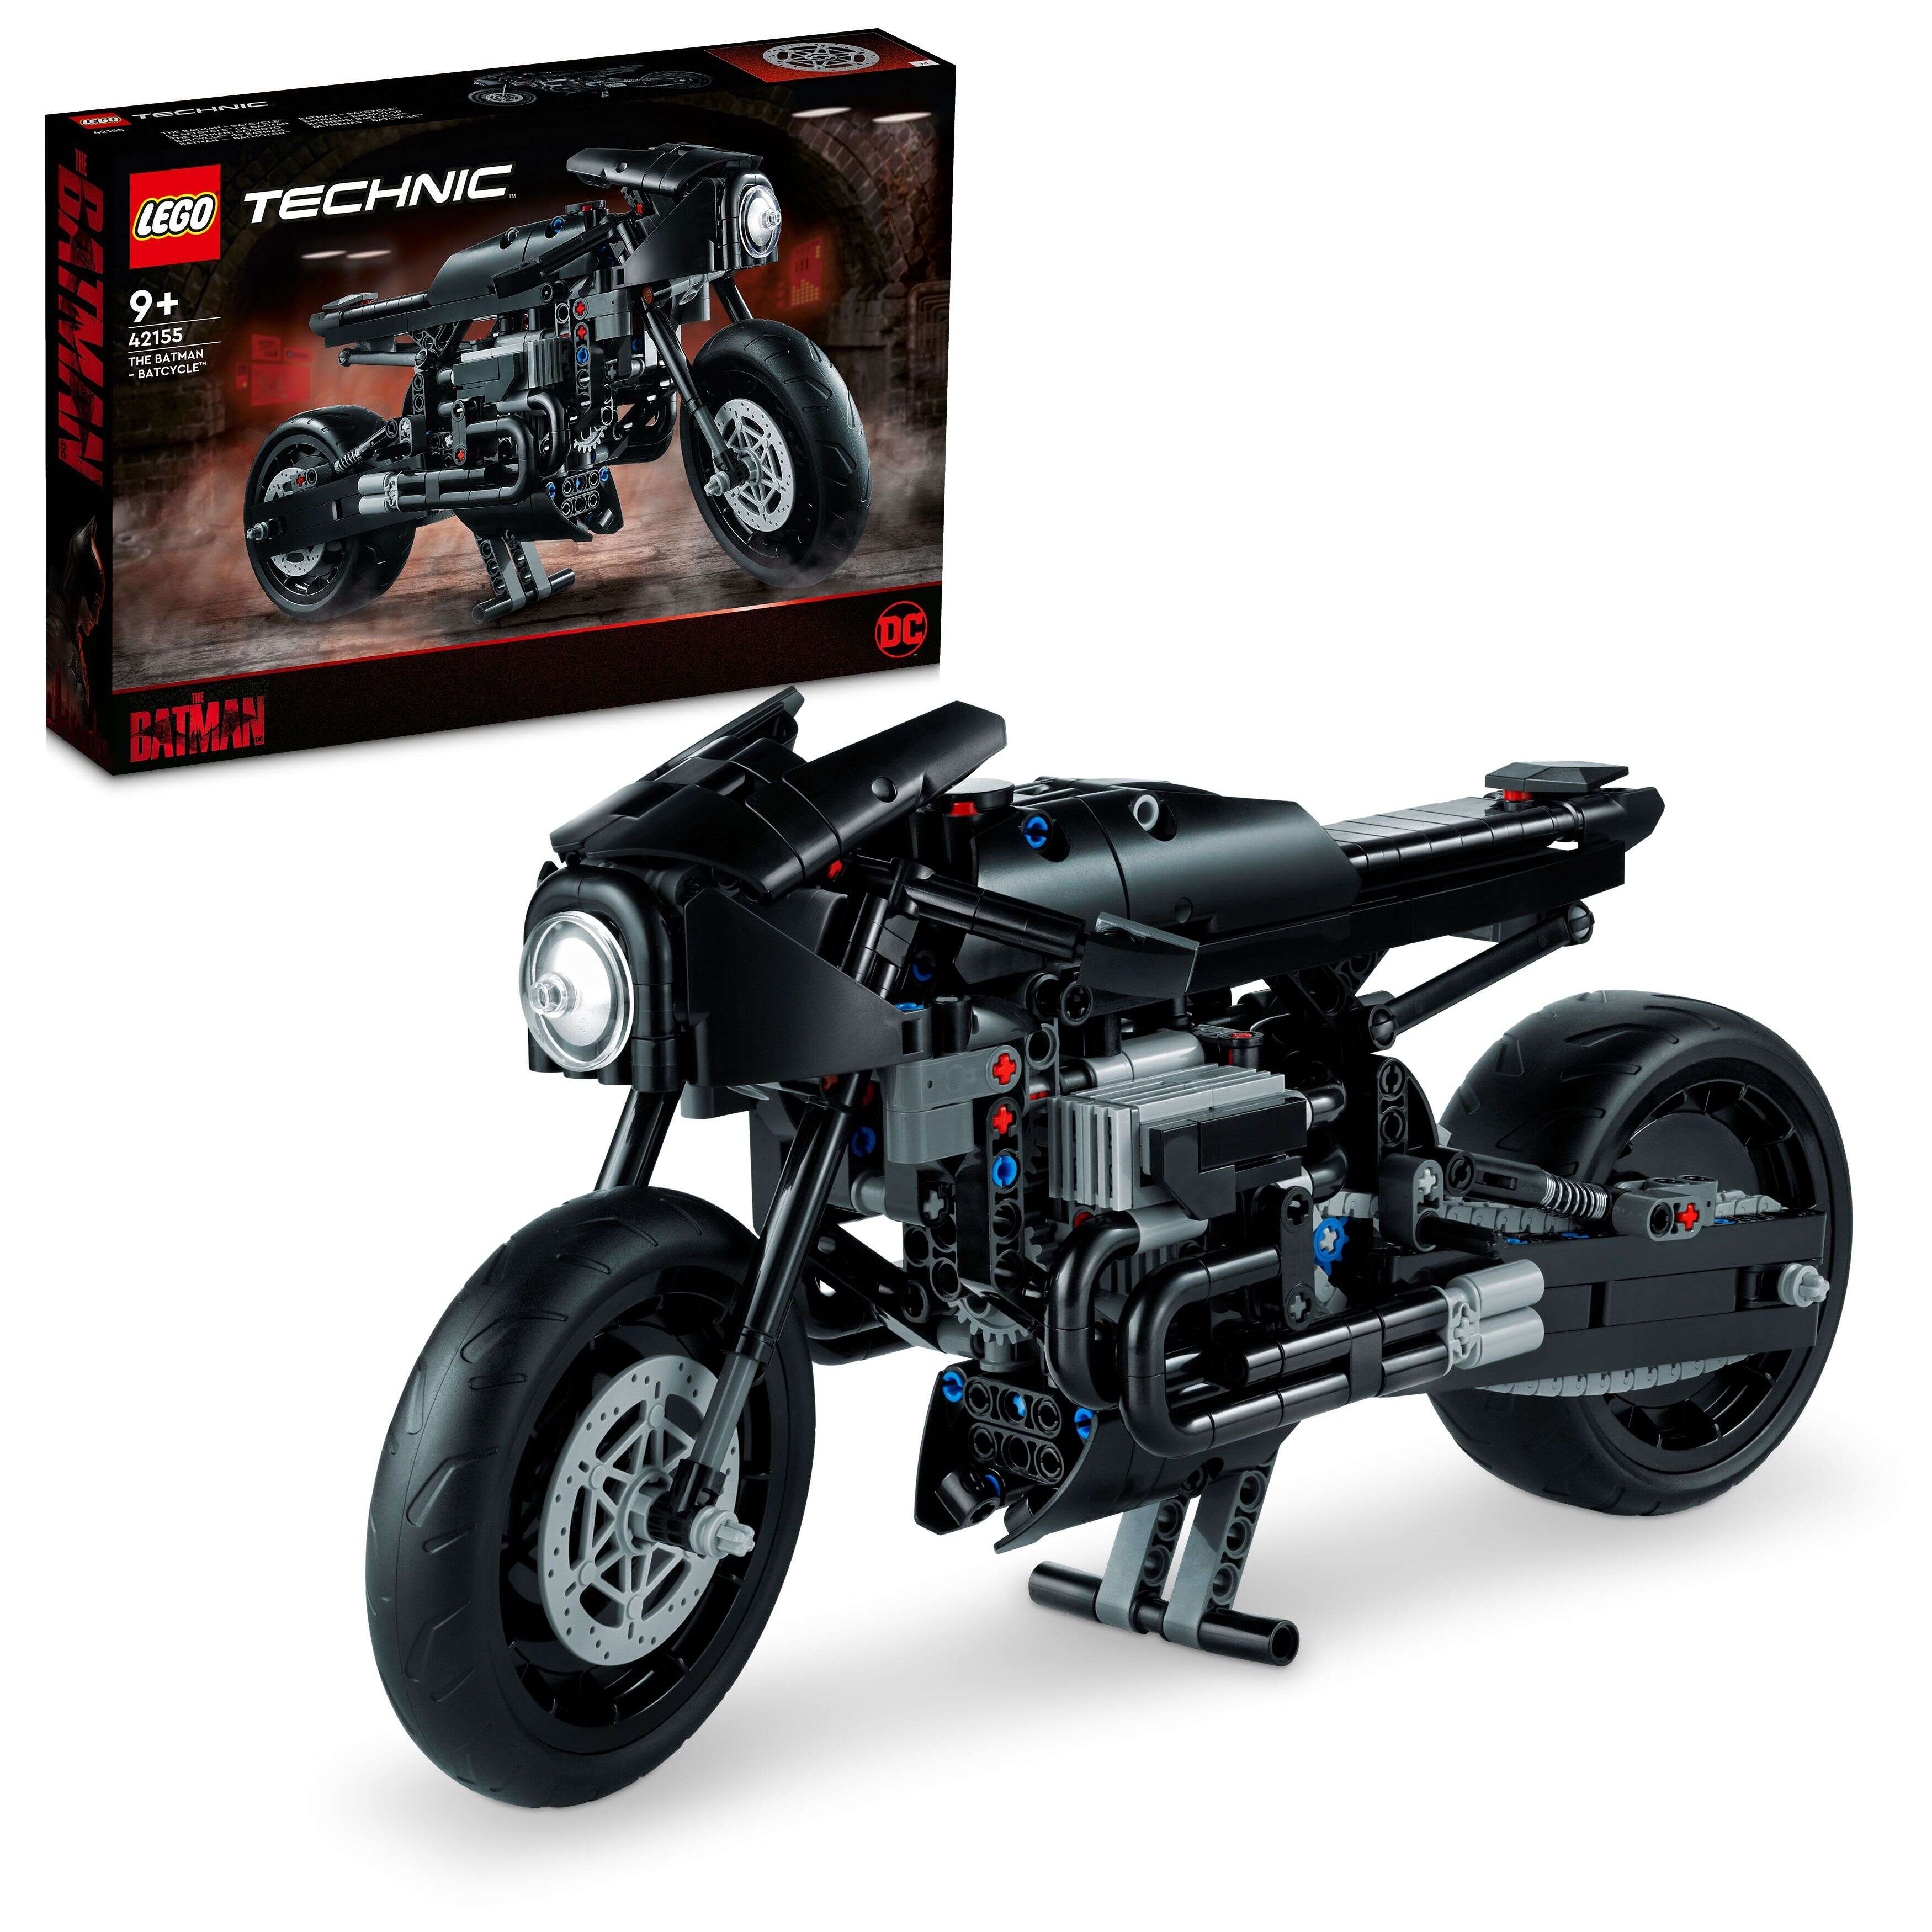 LEGO 42155 Technic THE BATMAN – BATCYCLE, Modell zum Spielen und Ausstellen